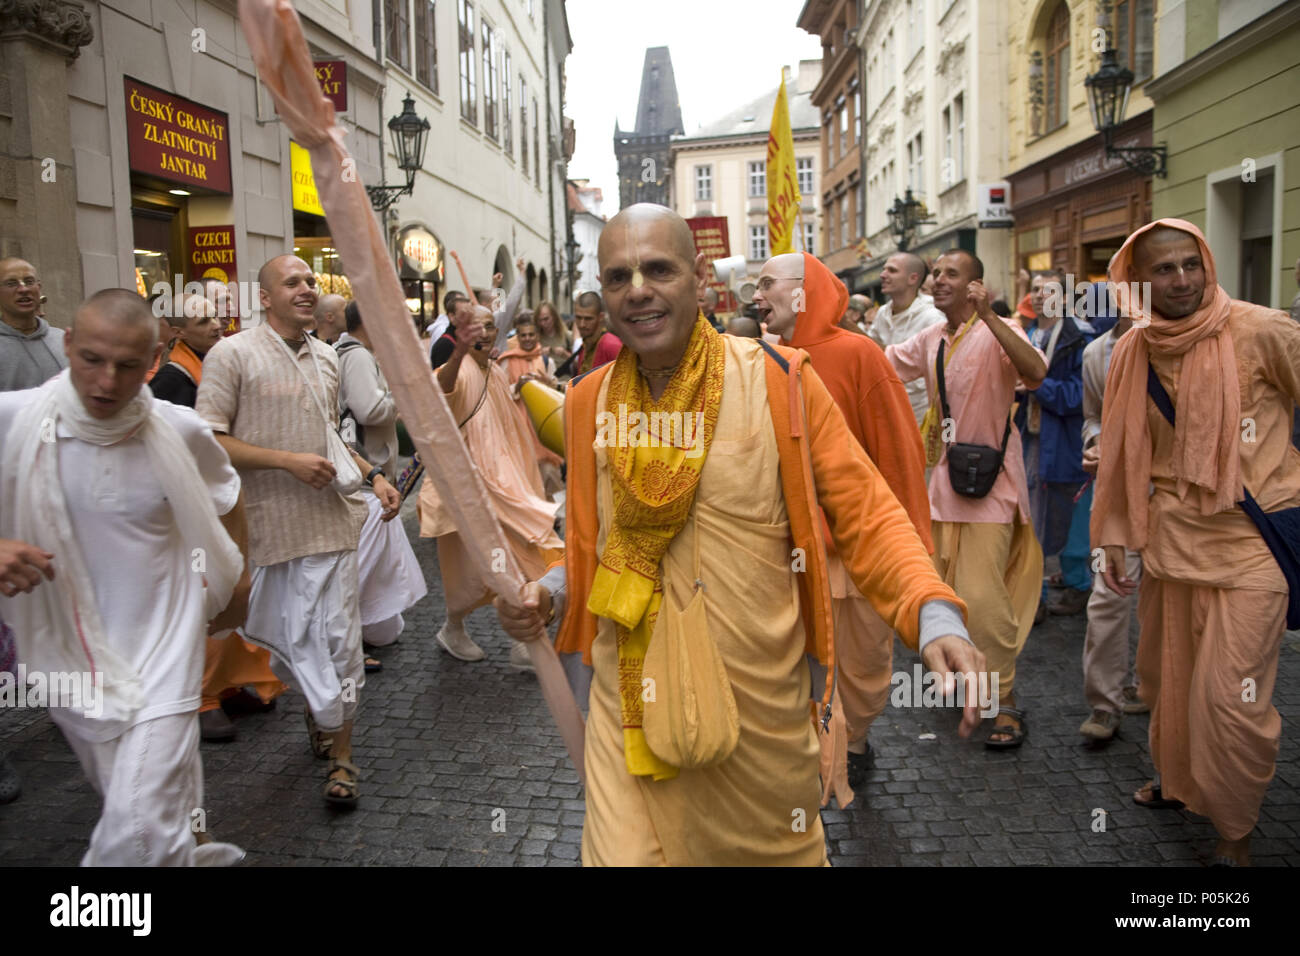 Hari Krishna dévots célébrer une maison de vacances dans les rues de Prague parmi les touristes dans la vieille ville. Banque D'Images